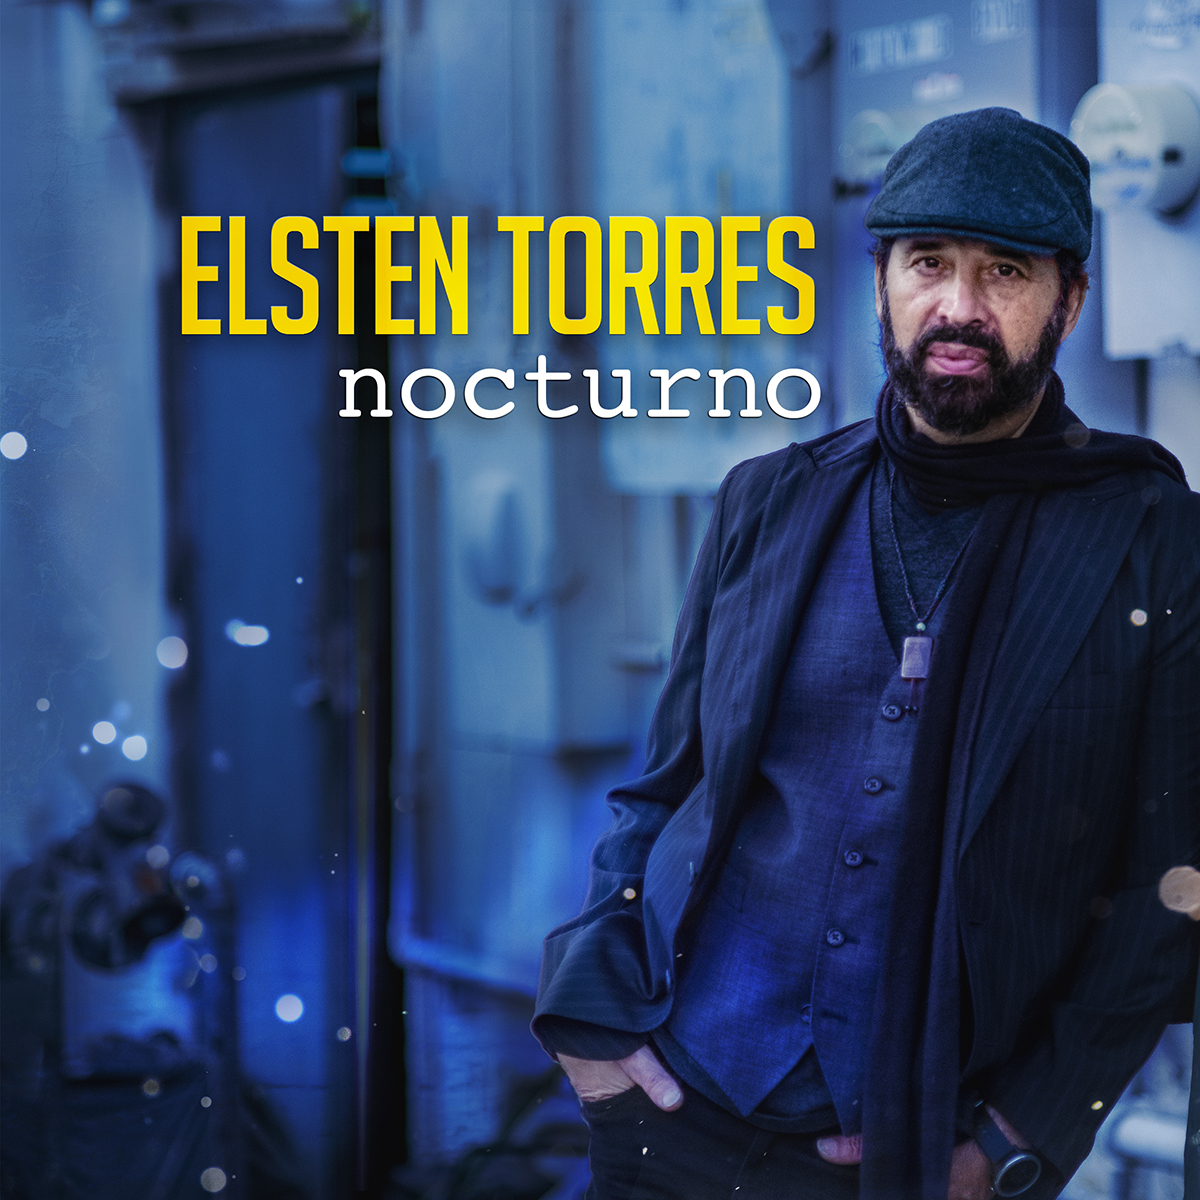 “Nocturno” es el nuevo álbum del cantautor cubano Elsten Torres